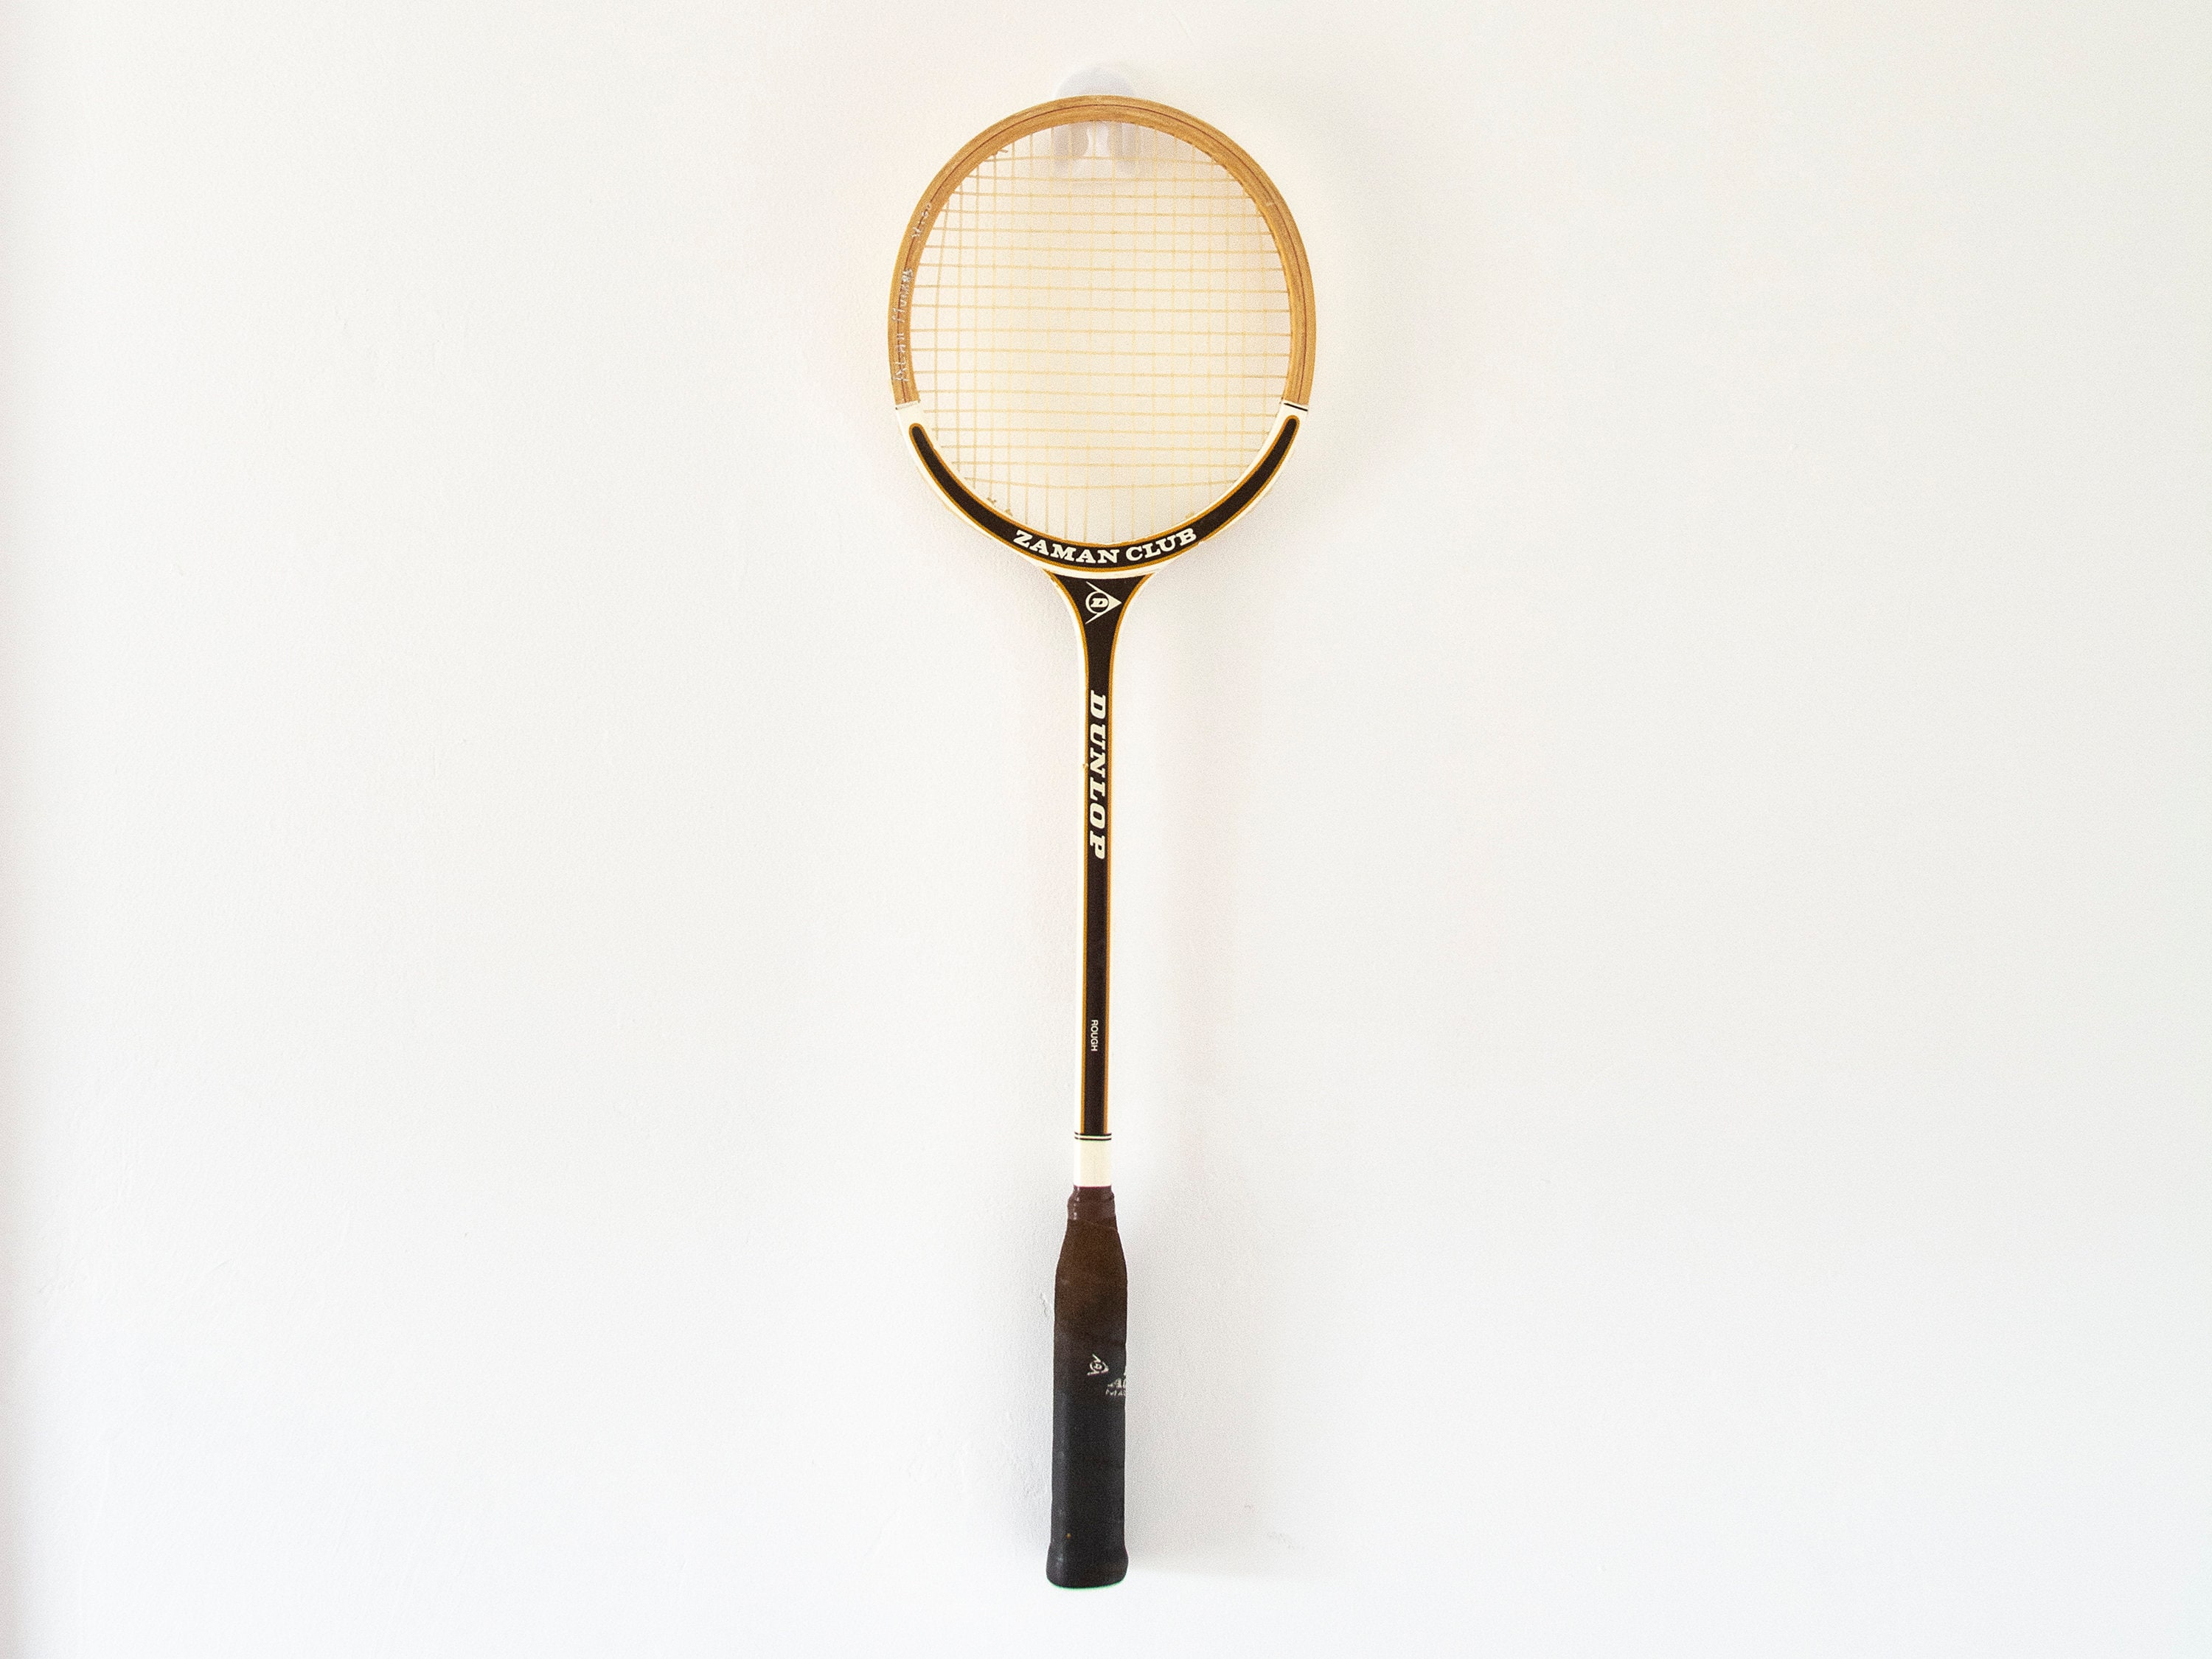 Raquex Bolsa para Raquetas de Tenis, bádminton y Squash. Raquetero